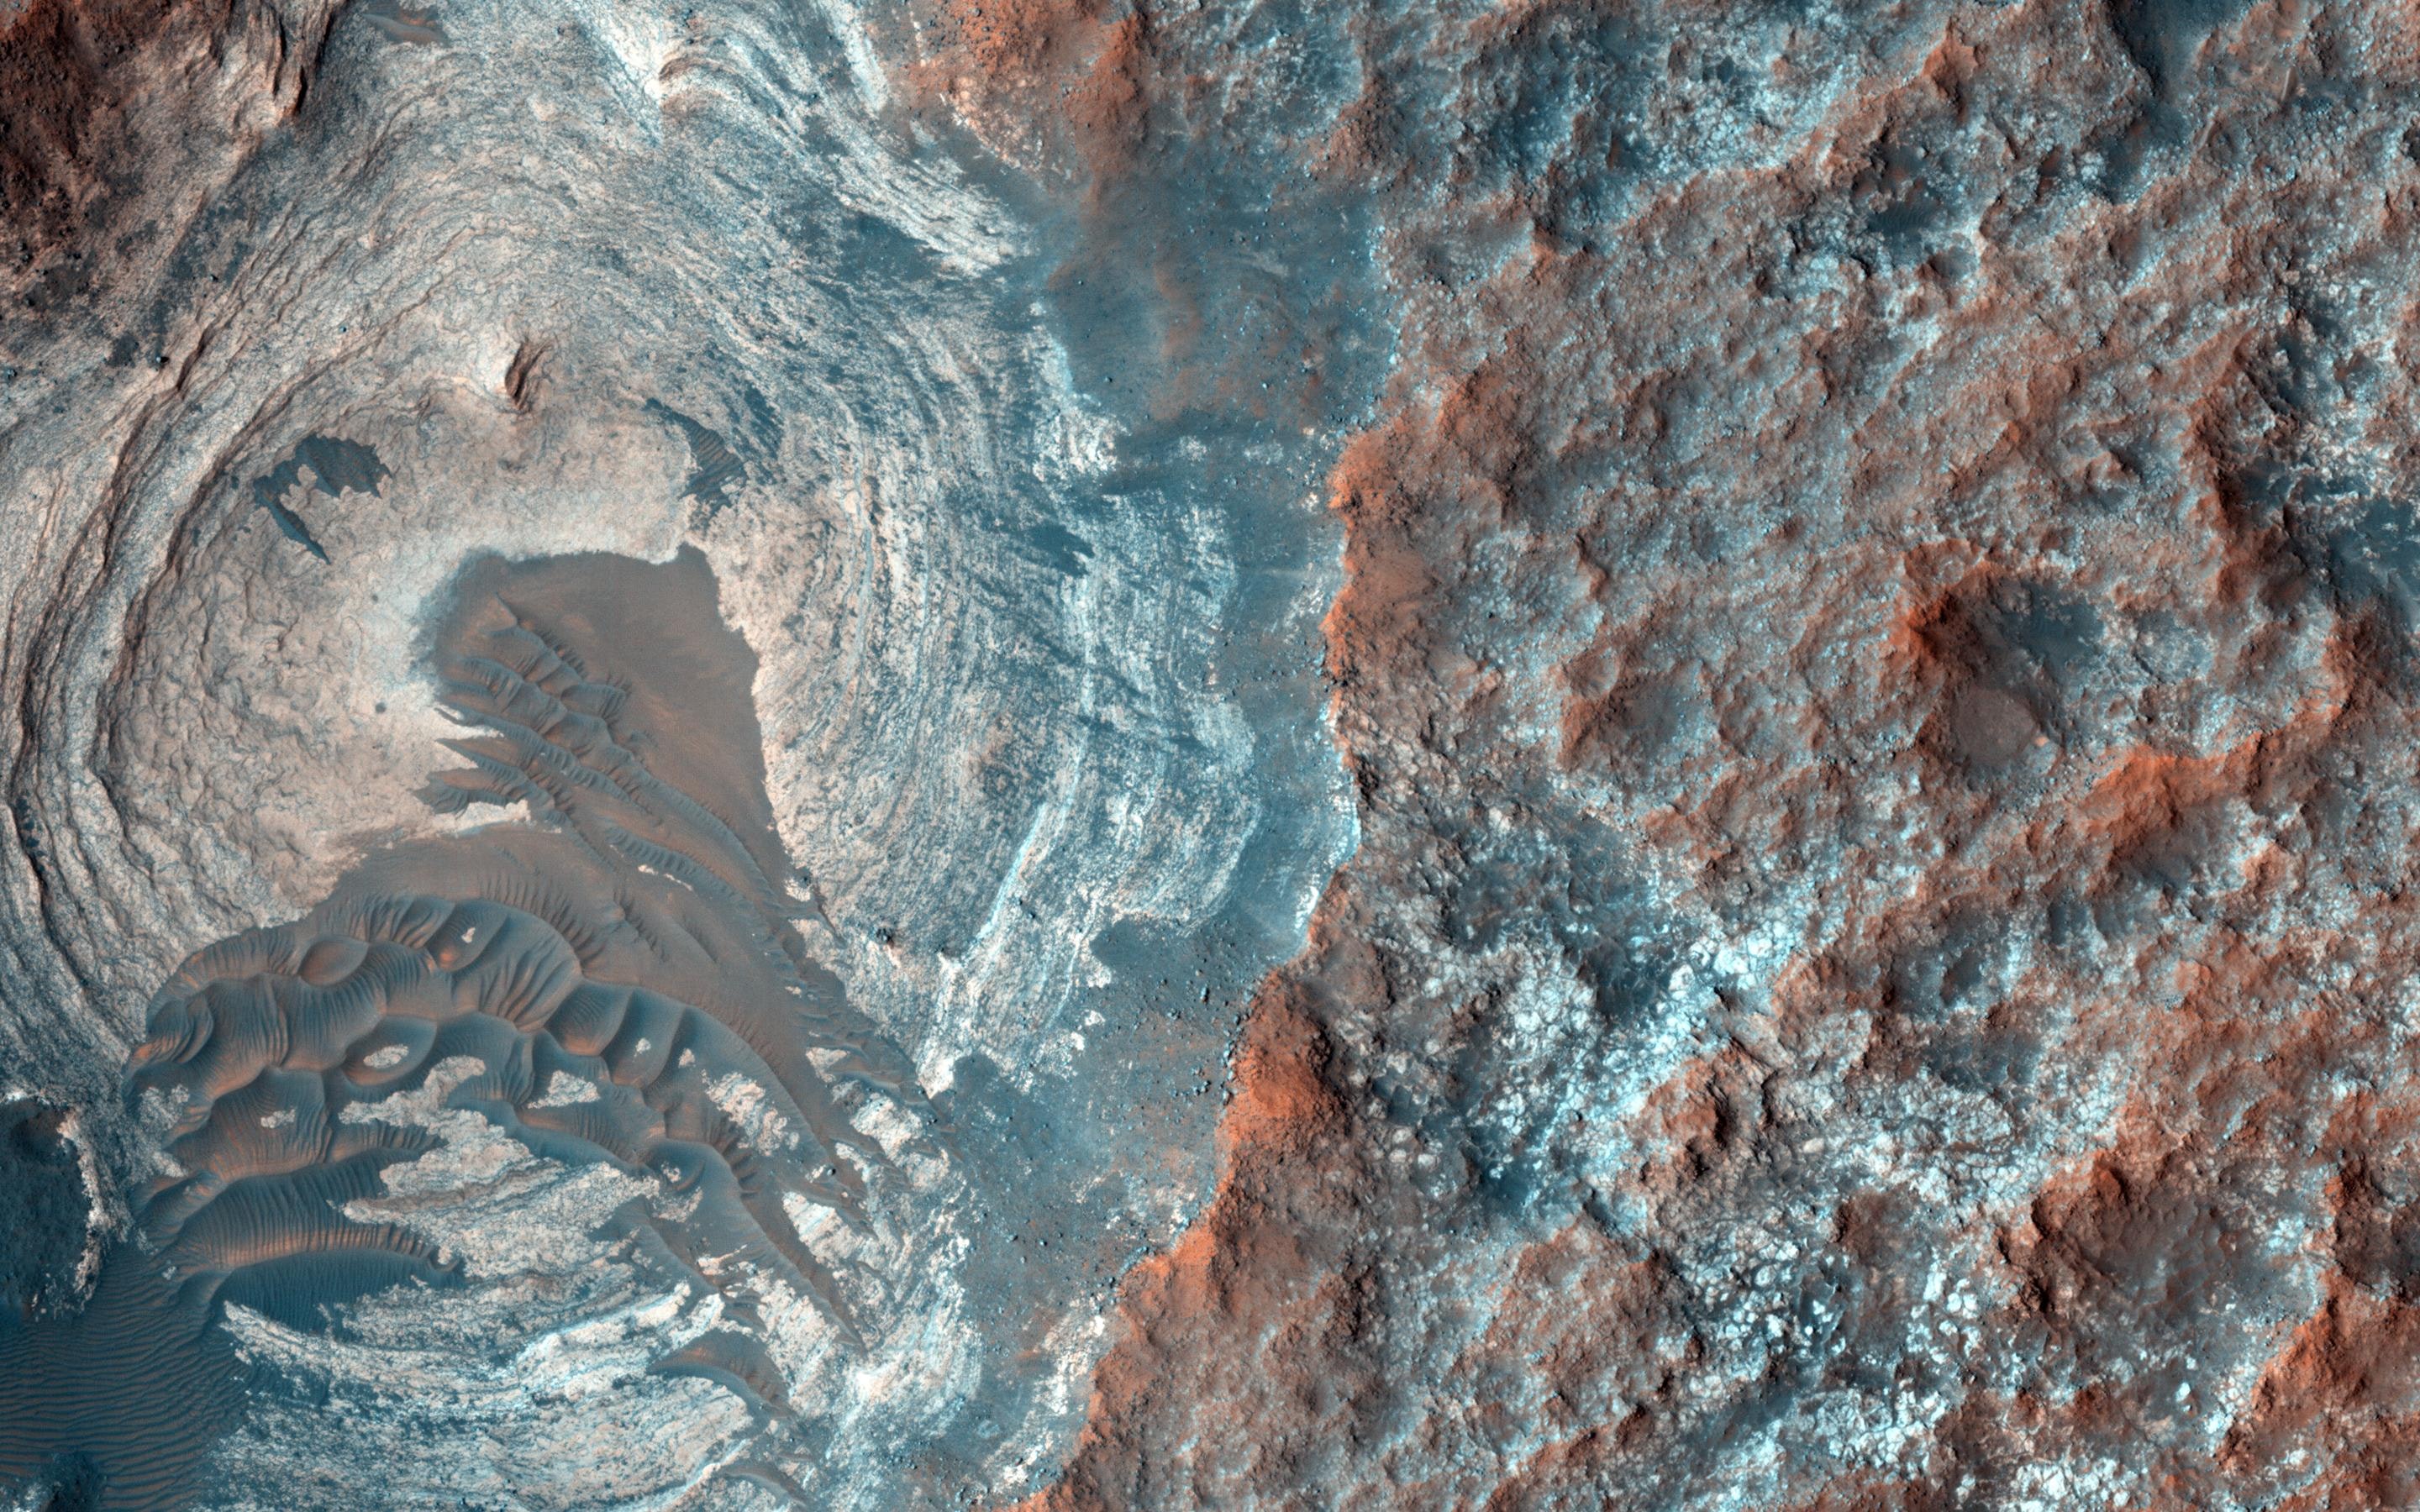 Mars image, courtesy of NASA